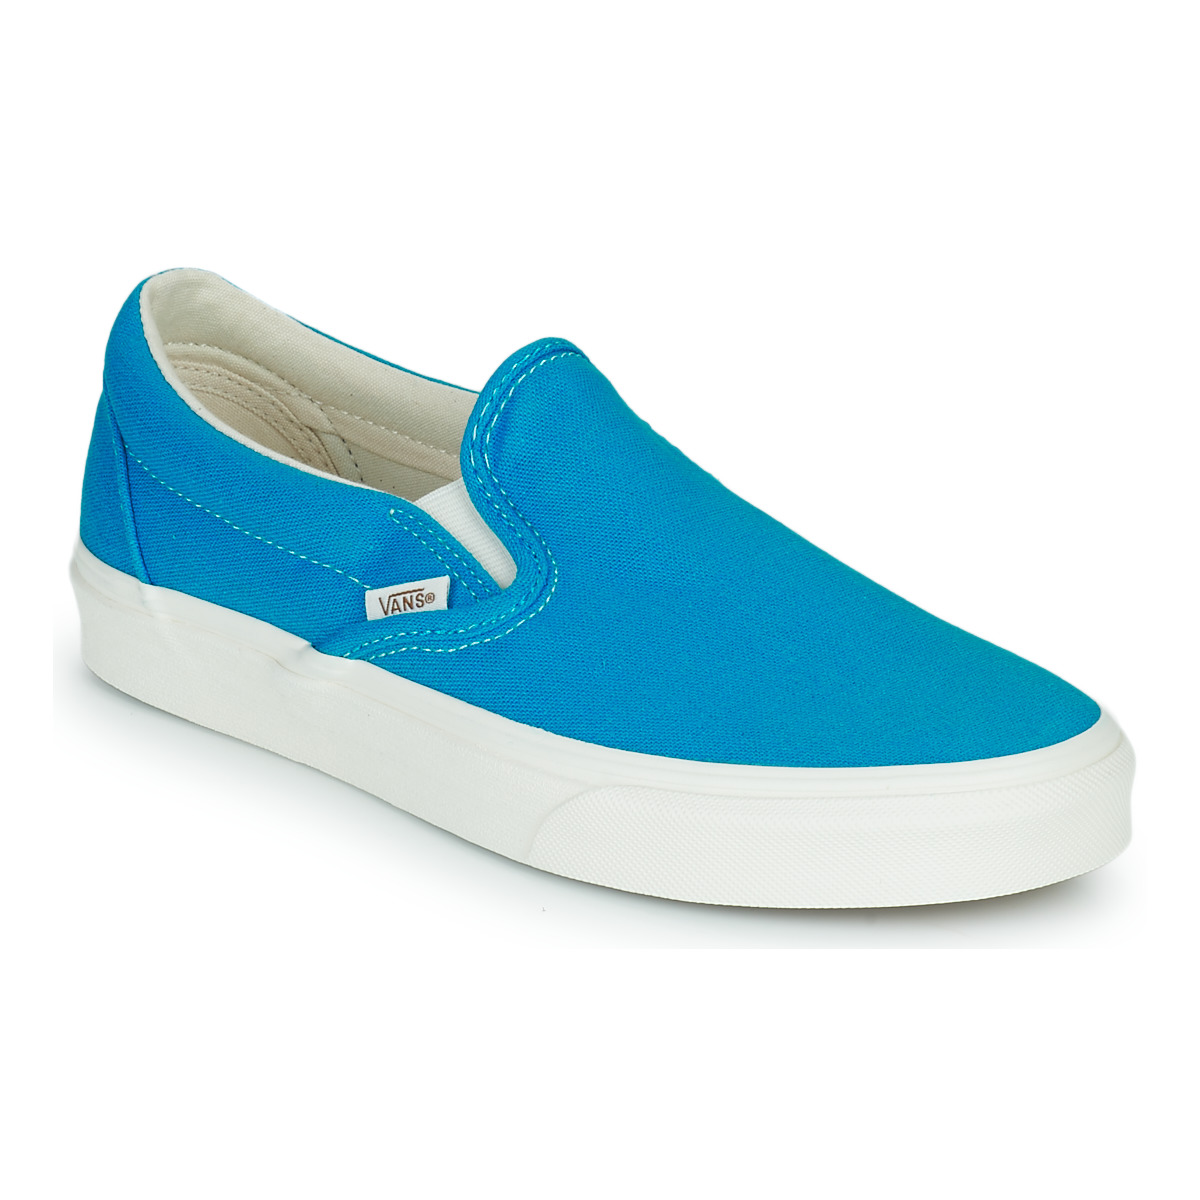 Cipők Belebújós cipők Vans Classic Slip-On Kék